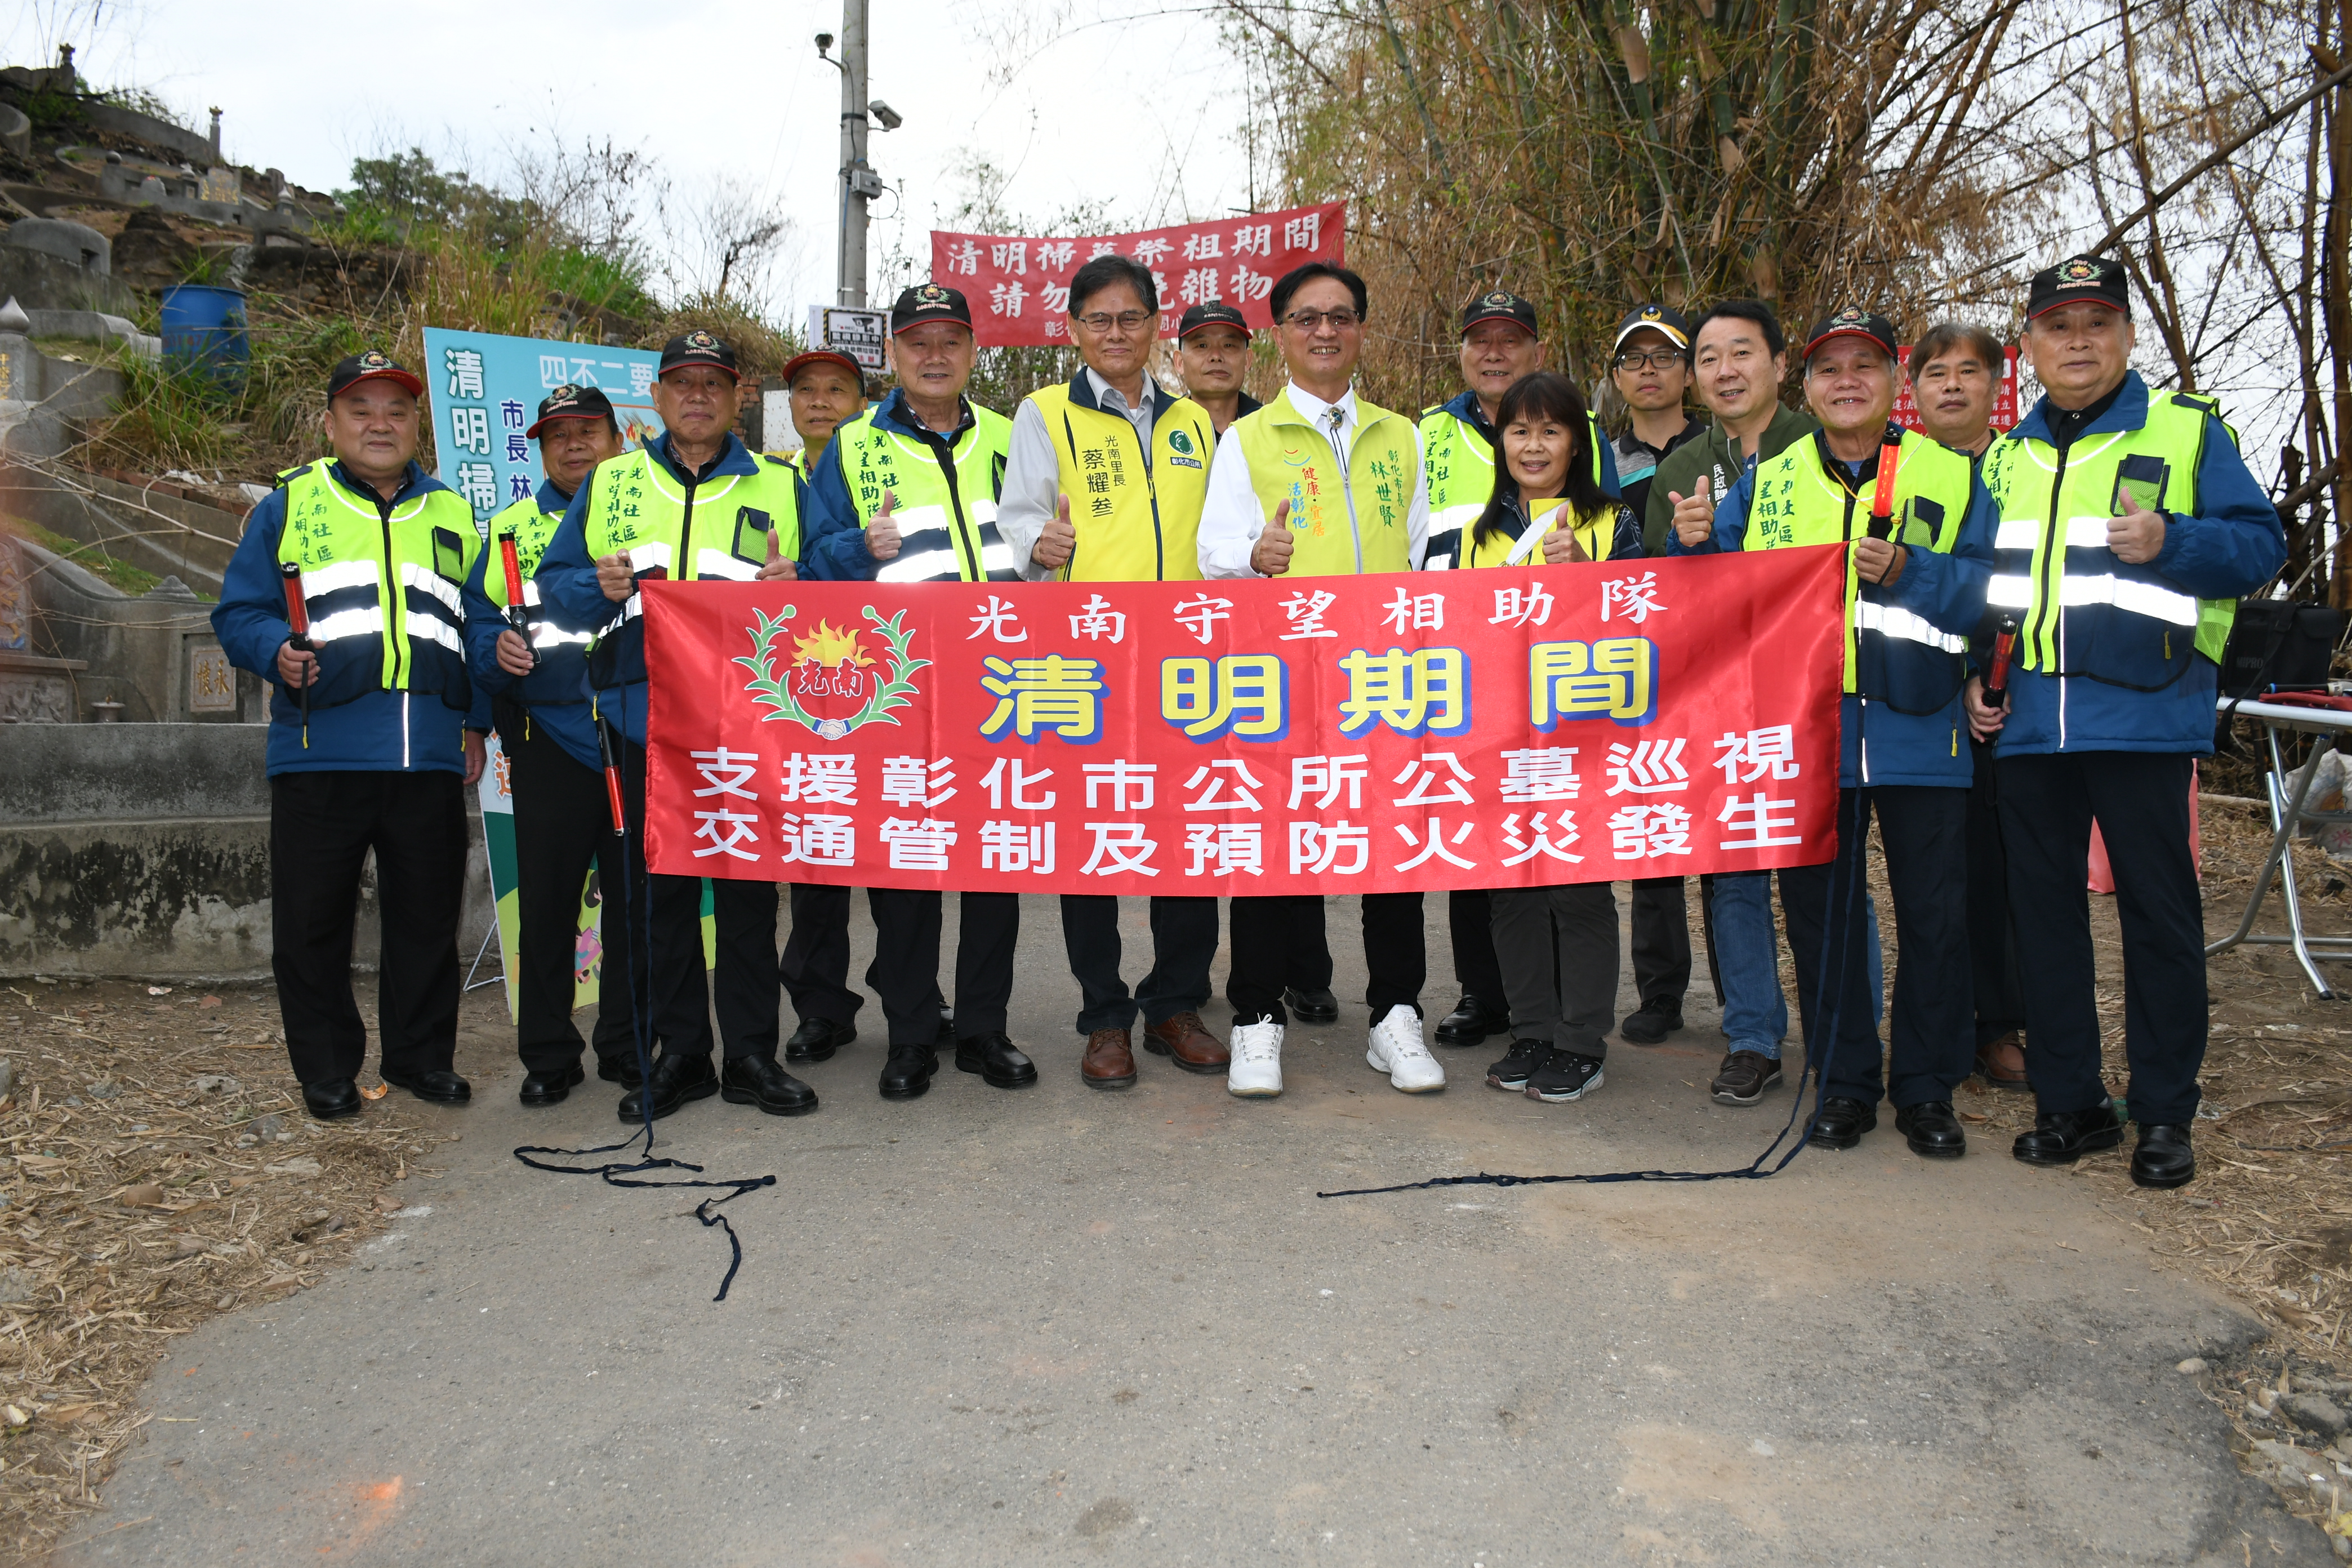 林世賢市長會同光南社區守望相助隊宣導清明期間交通暨防火等事項